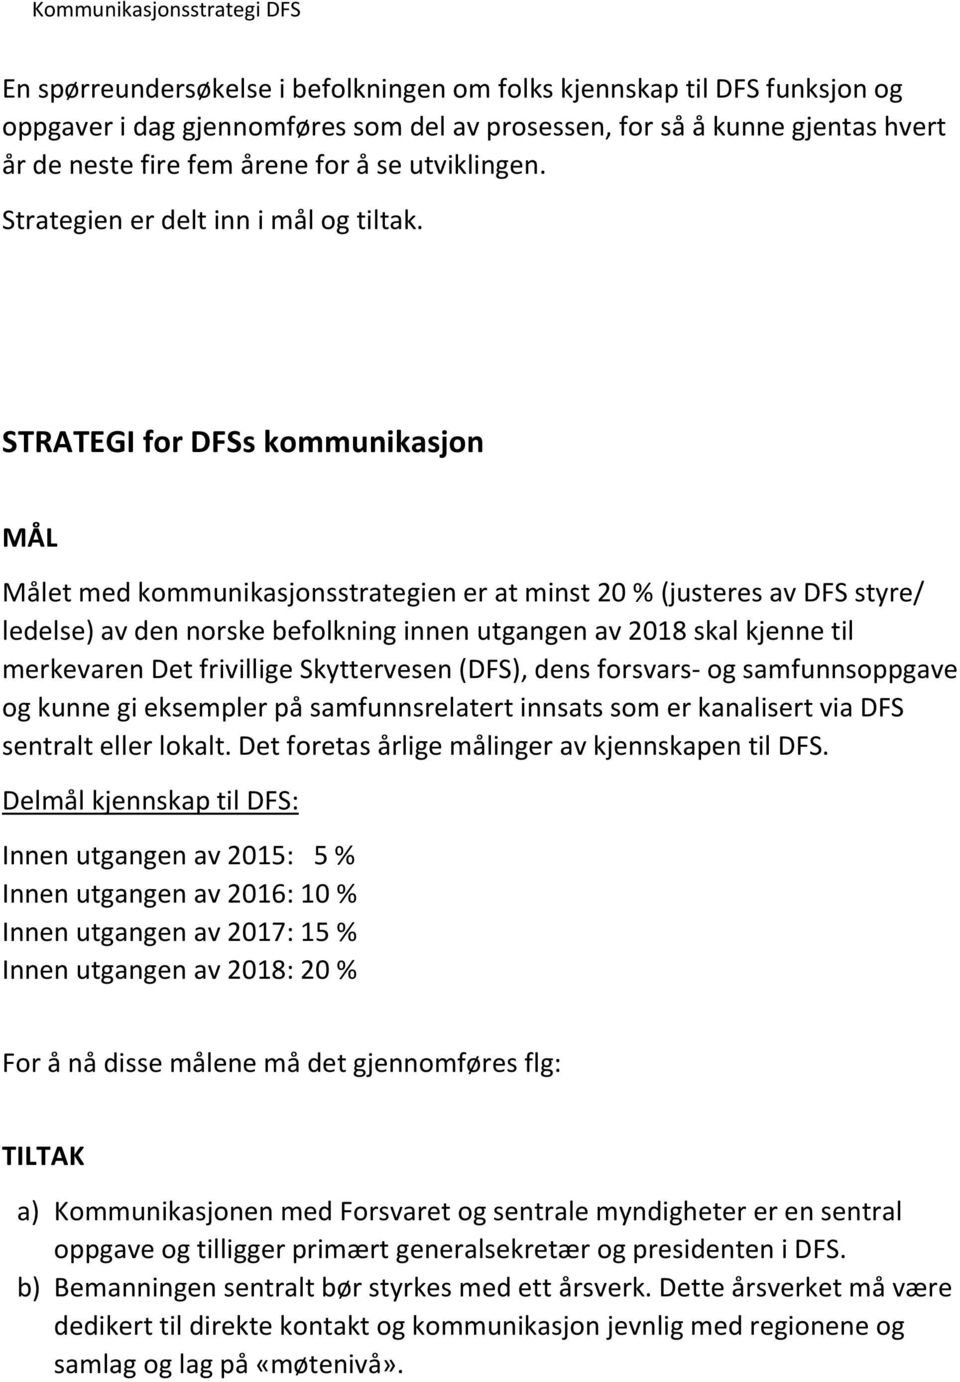 STRATEGI for DFSs kommunikasjon MÅL Målet med kommunikasjonsstrategien er at minst 20 % (justeres av DFS styre/ ledelse) av den norske befolkning innen utgangen av 2018 skal kjenne til merkevaren Det